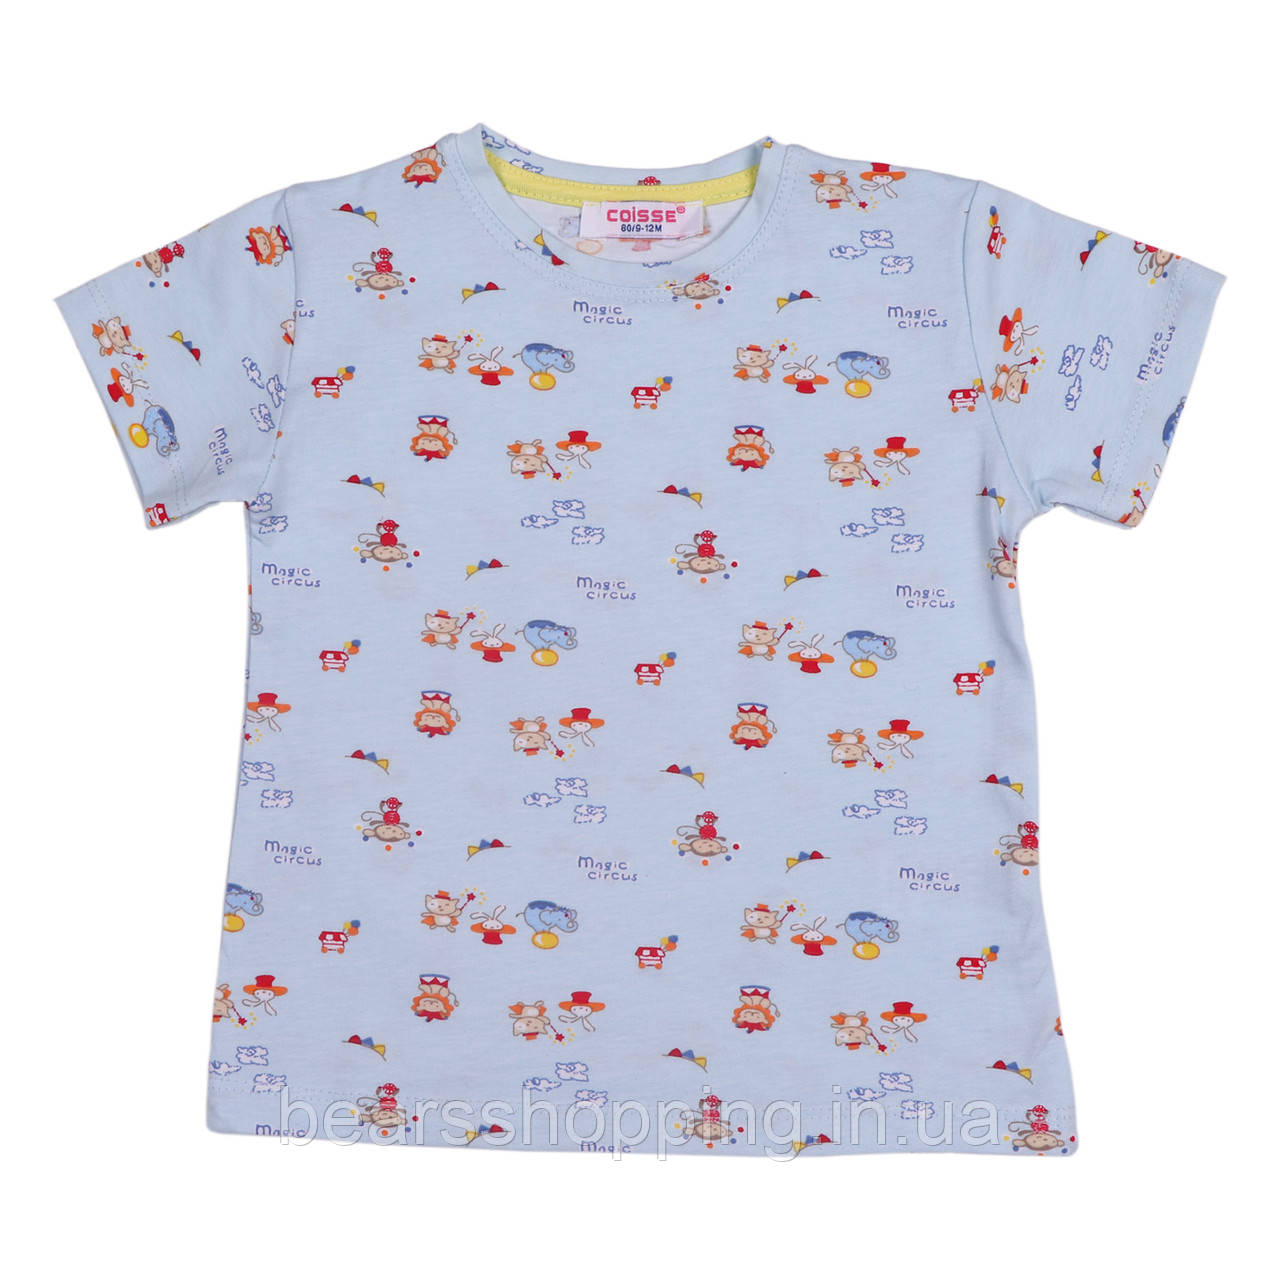 Дитяча футболка для дівчинки або на хлопчика, розмір 80,86,92,98,104 см. на вік 1,2,3,4 роки